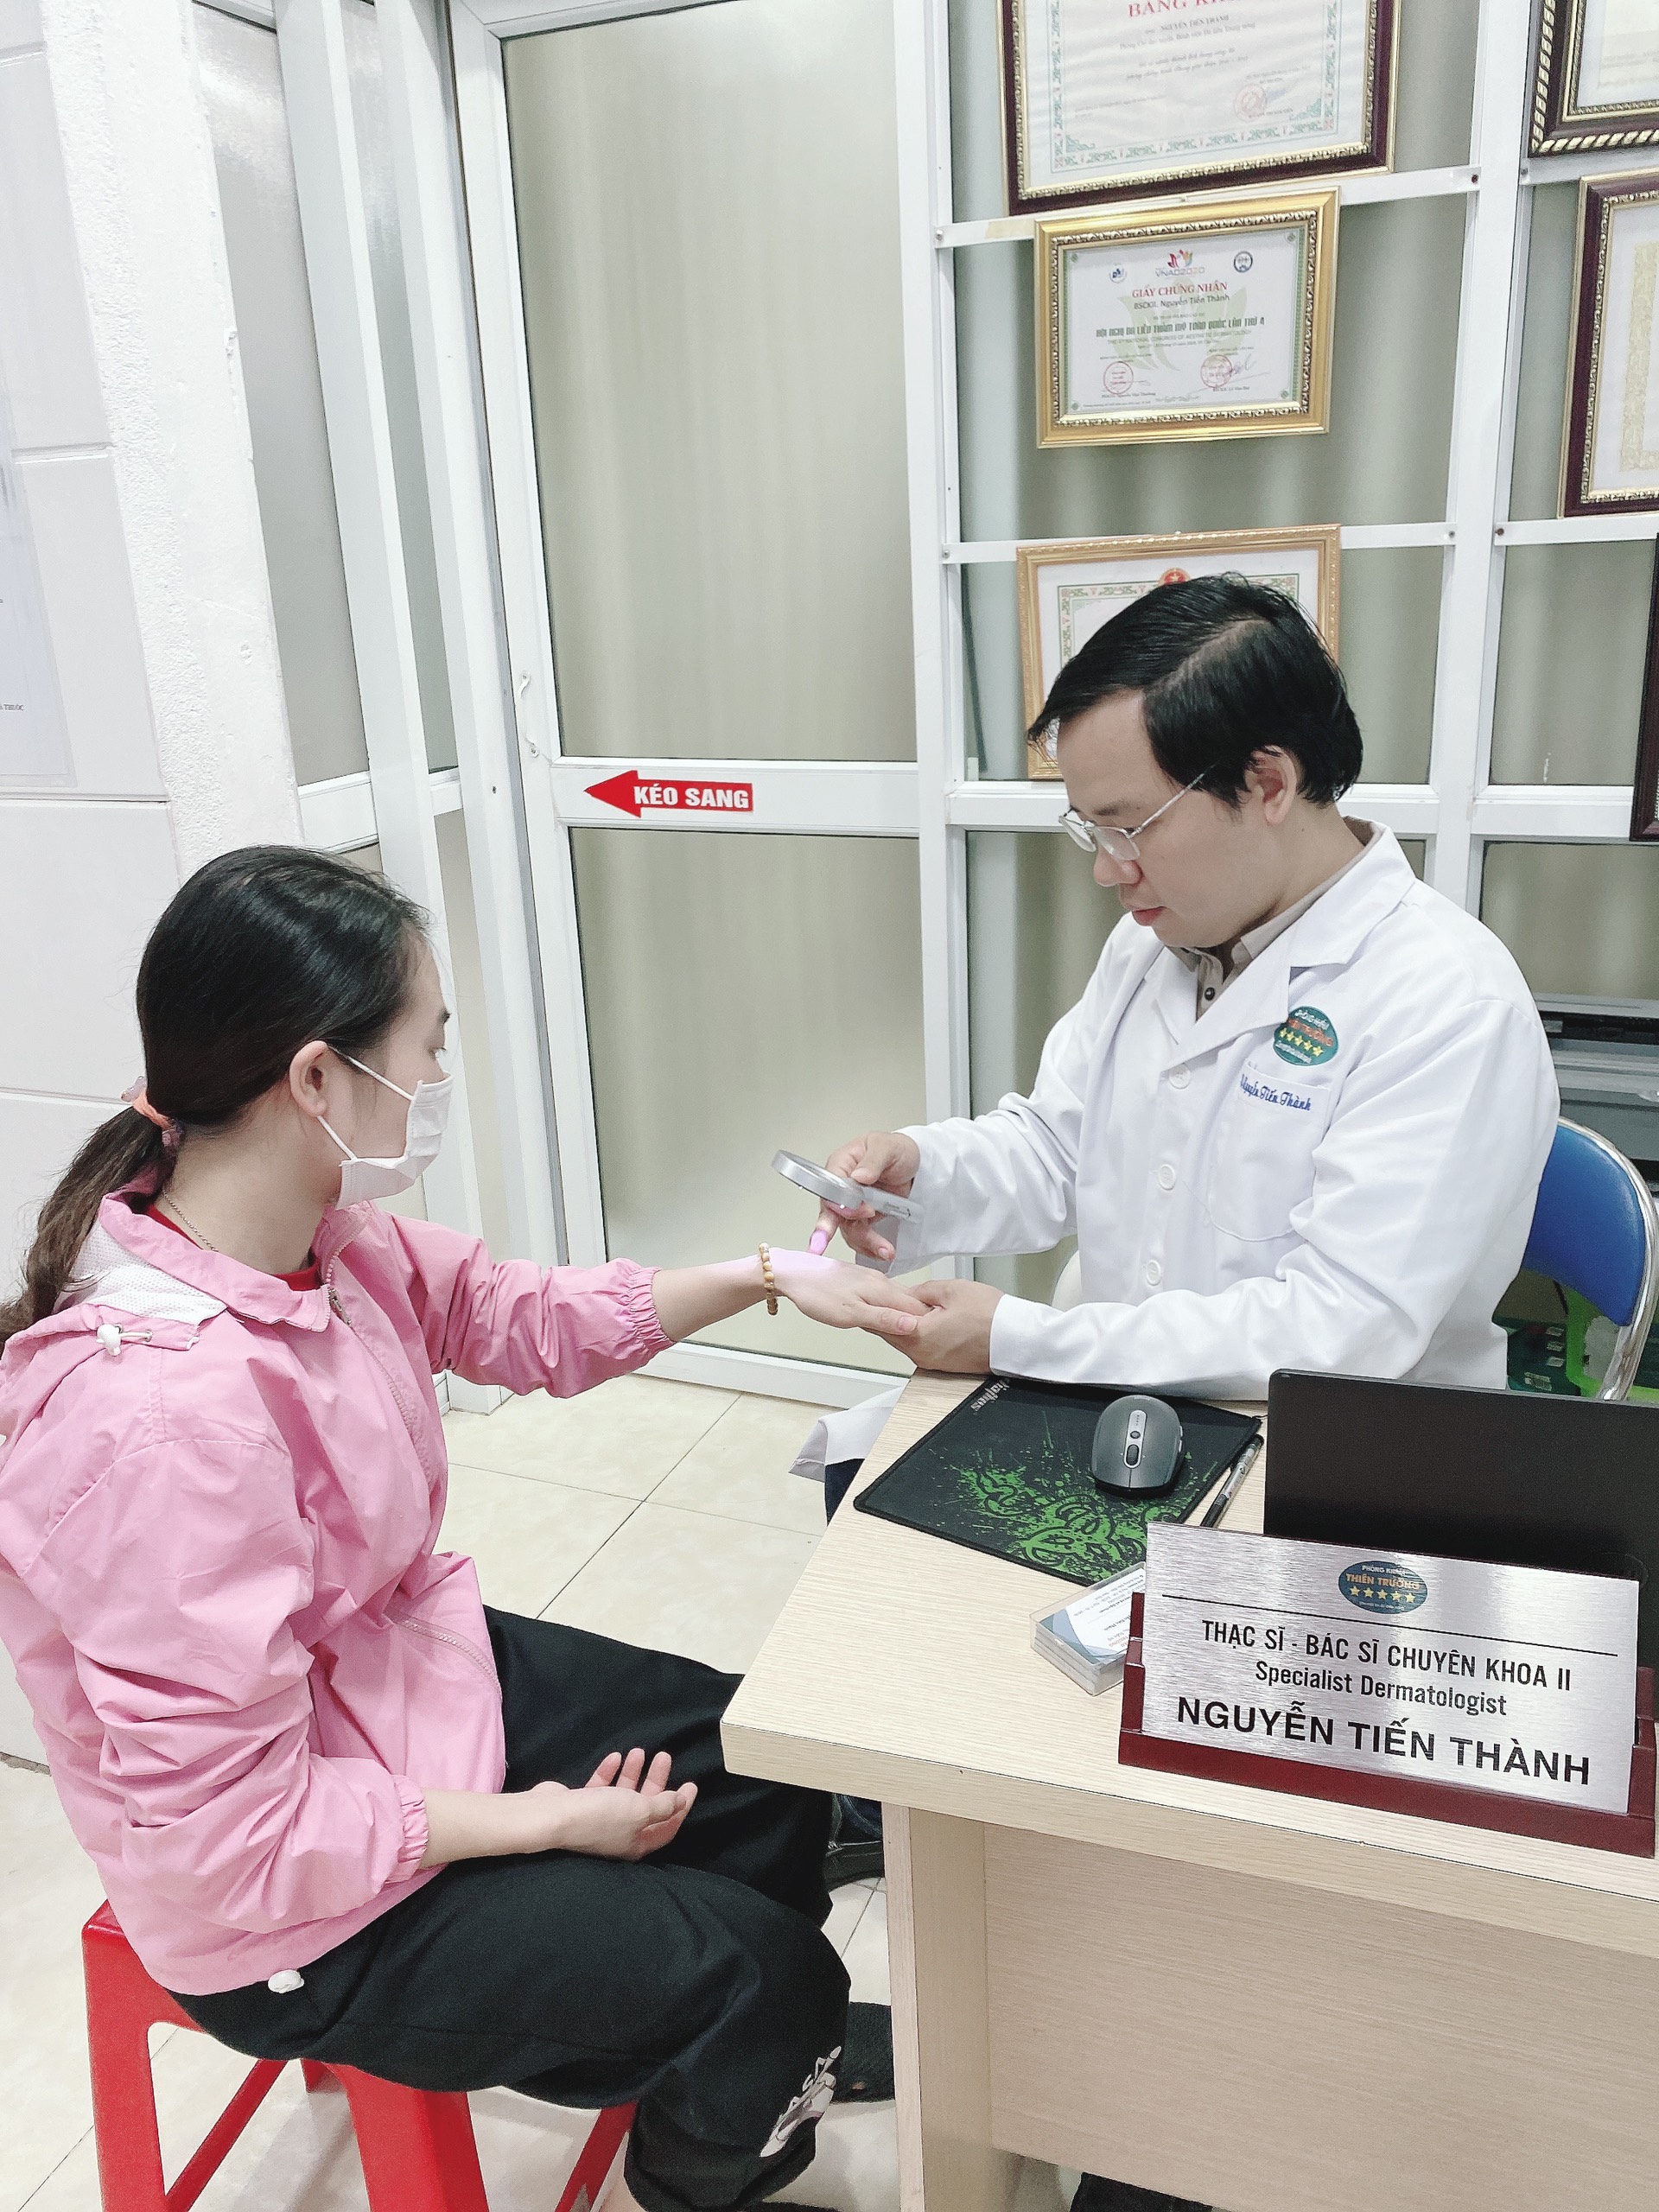 Hình ảnh: Thạc sĩ- Bác sĩ Chuyên khoa II Nguyễn Tiến Thành đang khám da cho bệnh nhân.